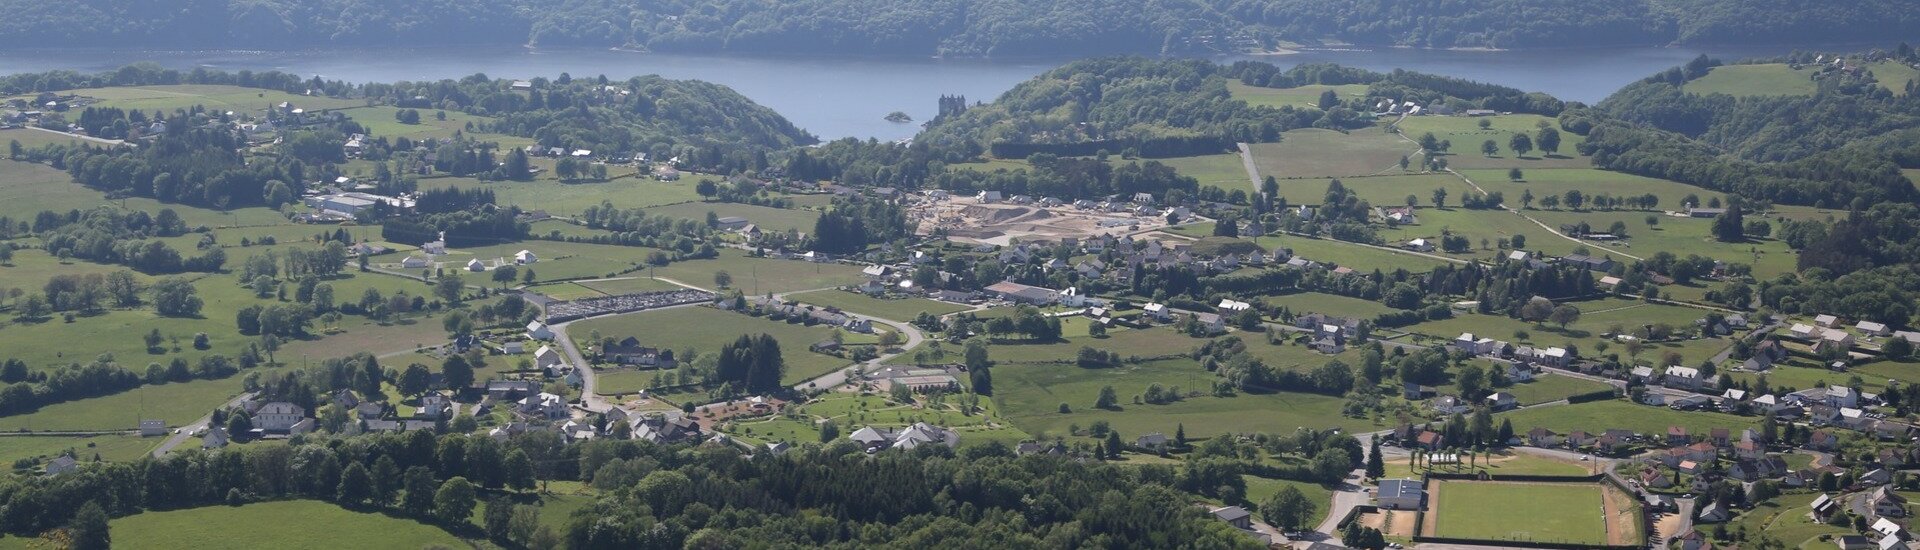 Commune de Lanobre - Cantal Auvergne